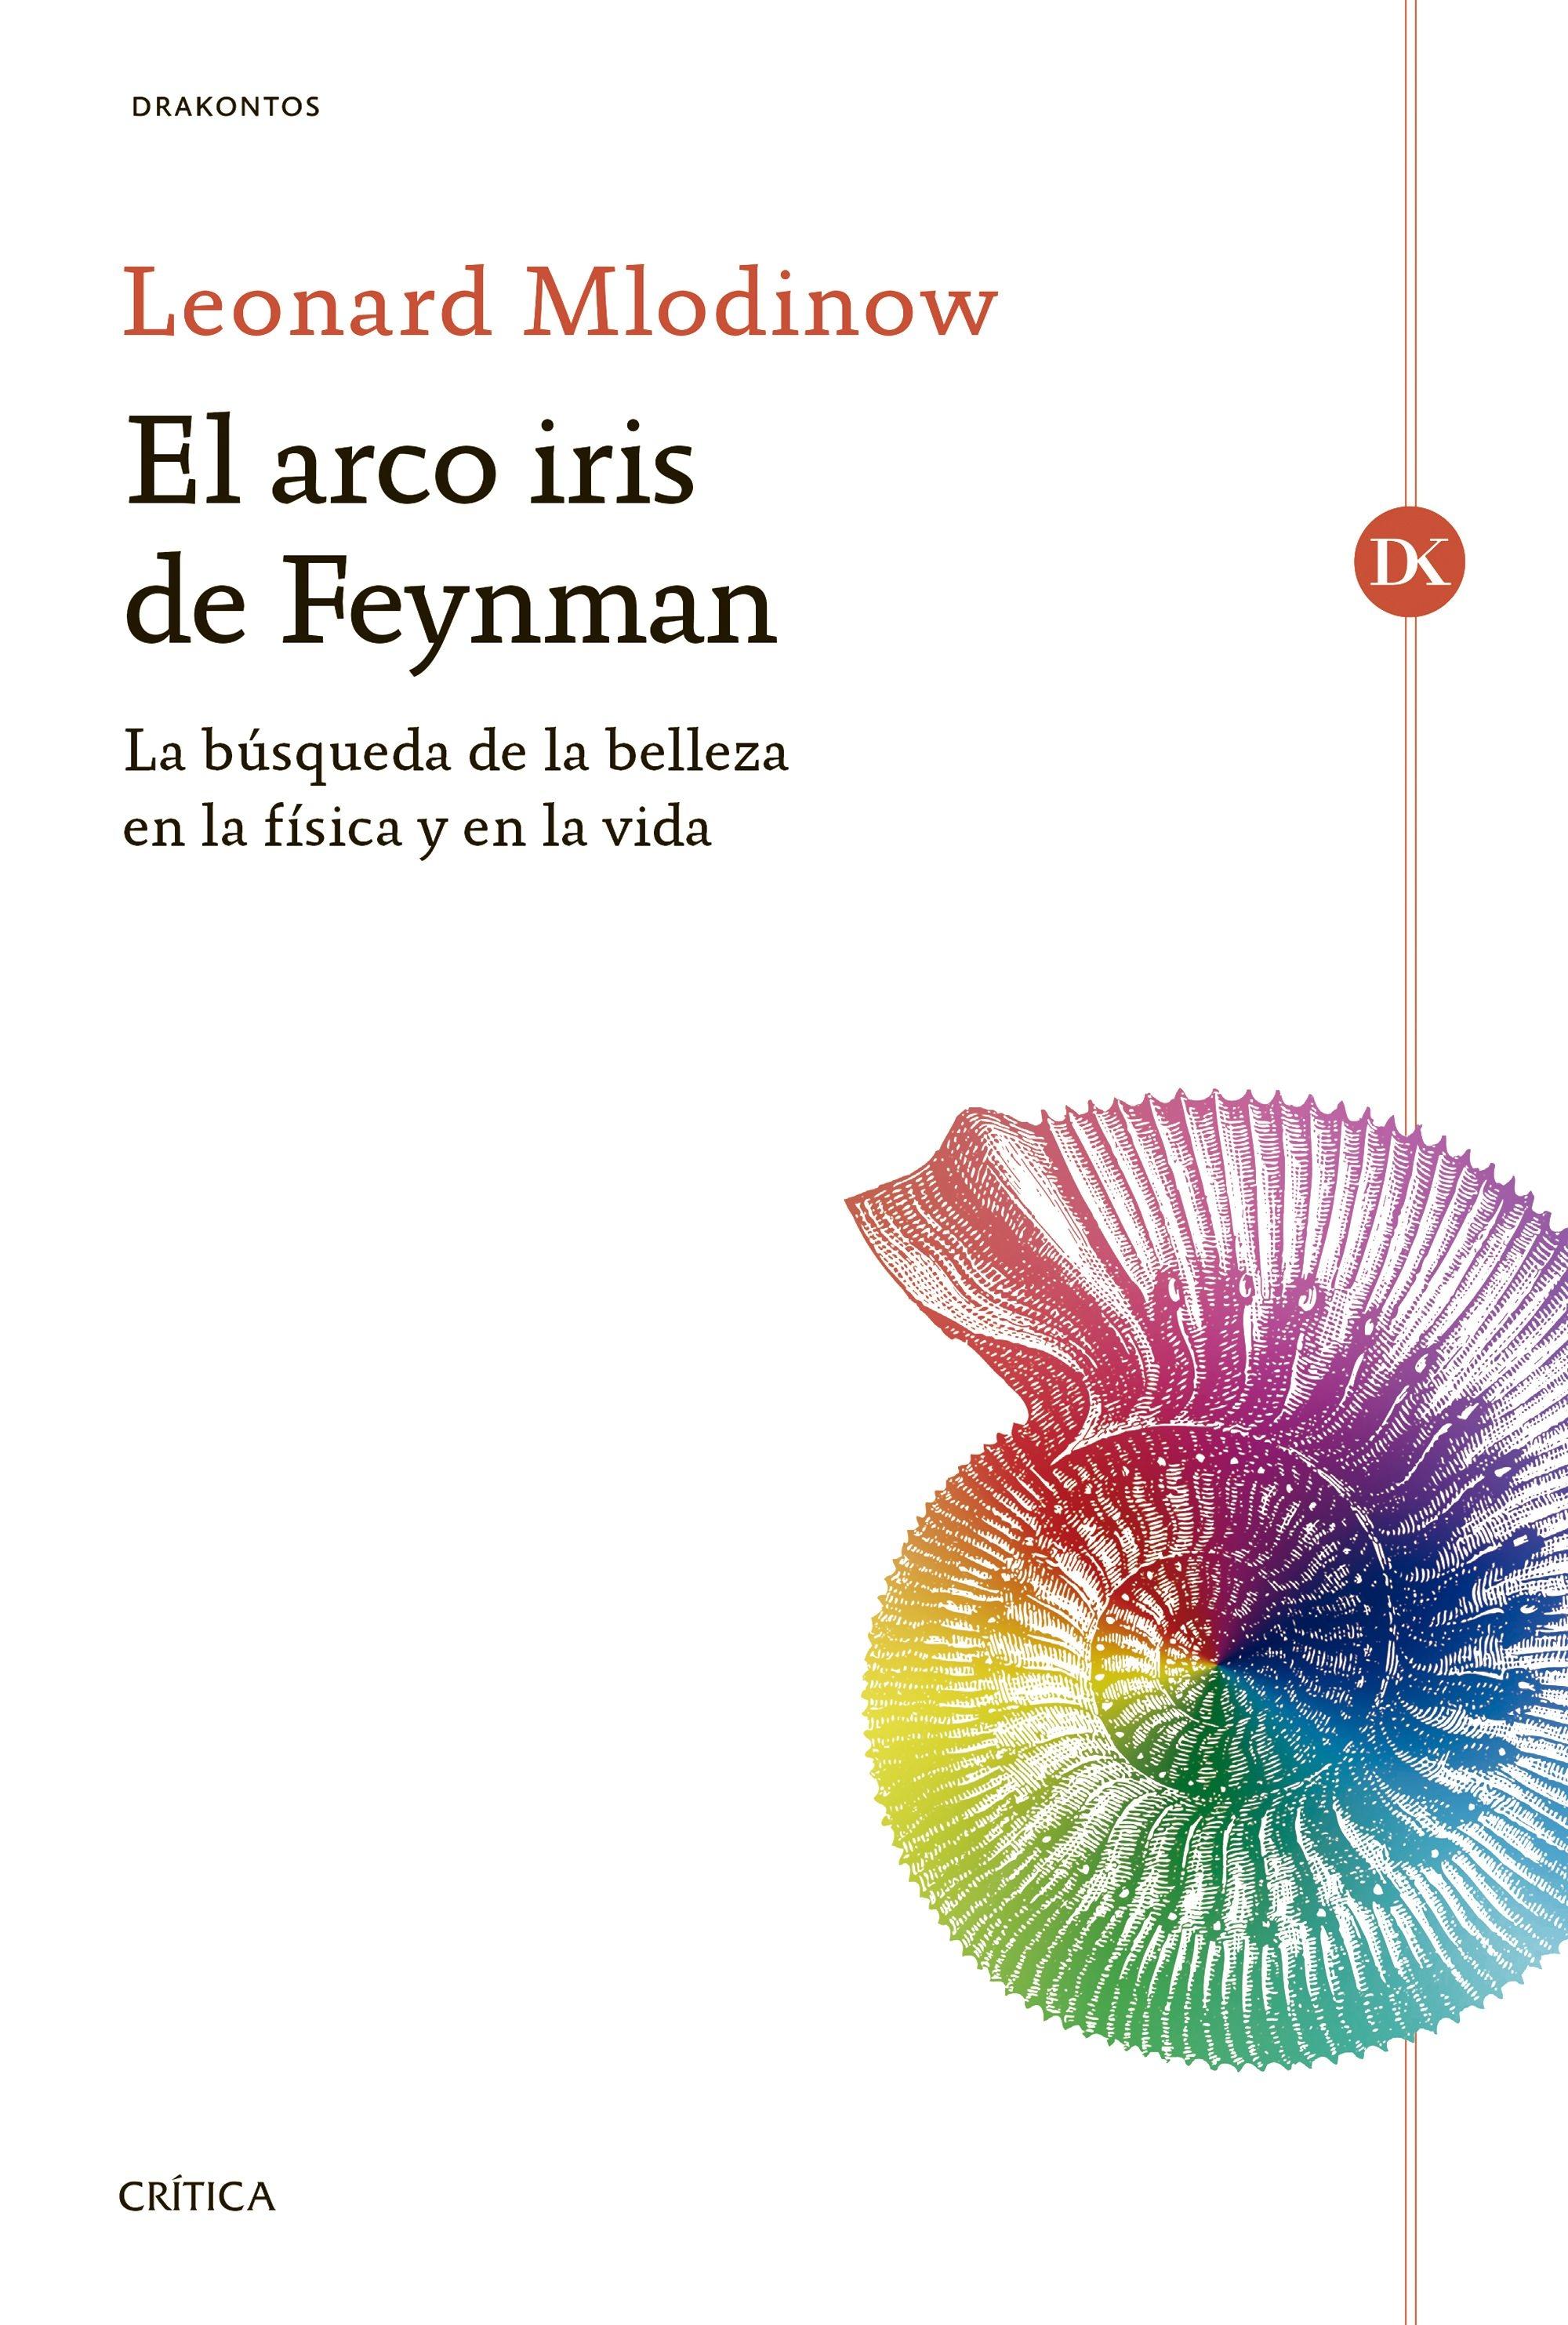 El Arco Iris de Feynman "La Búsqueda de la Belleza en la Física y en la Vida". 